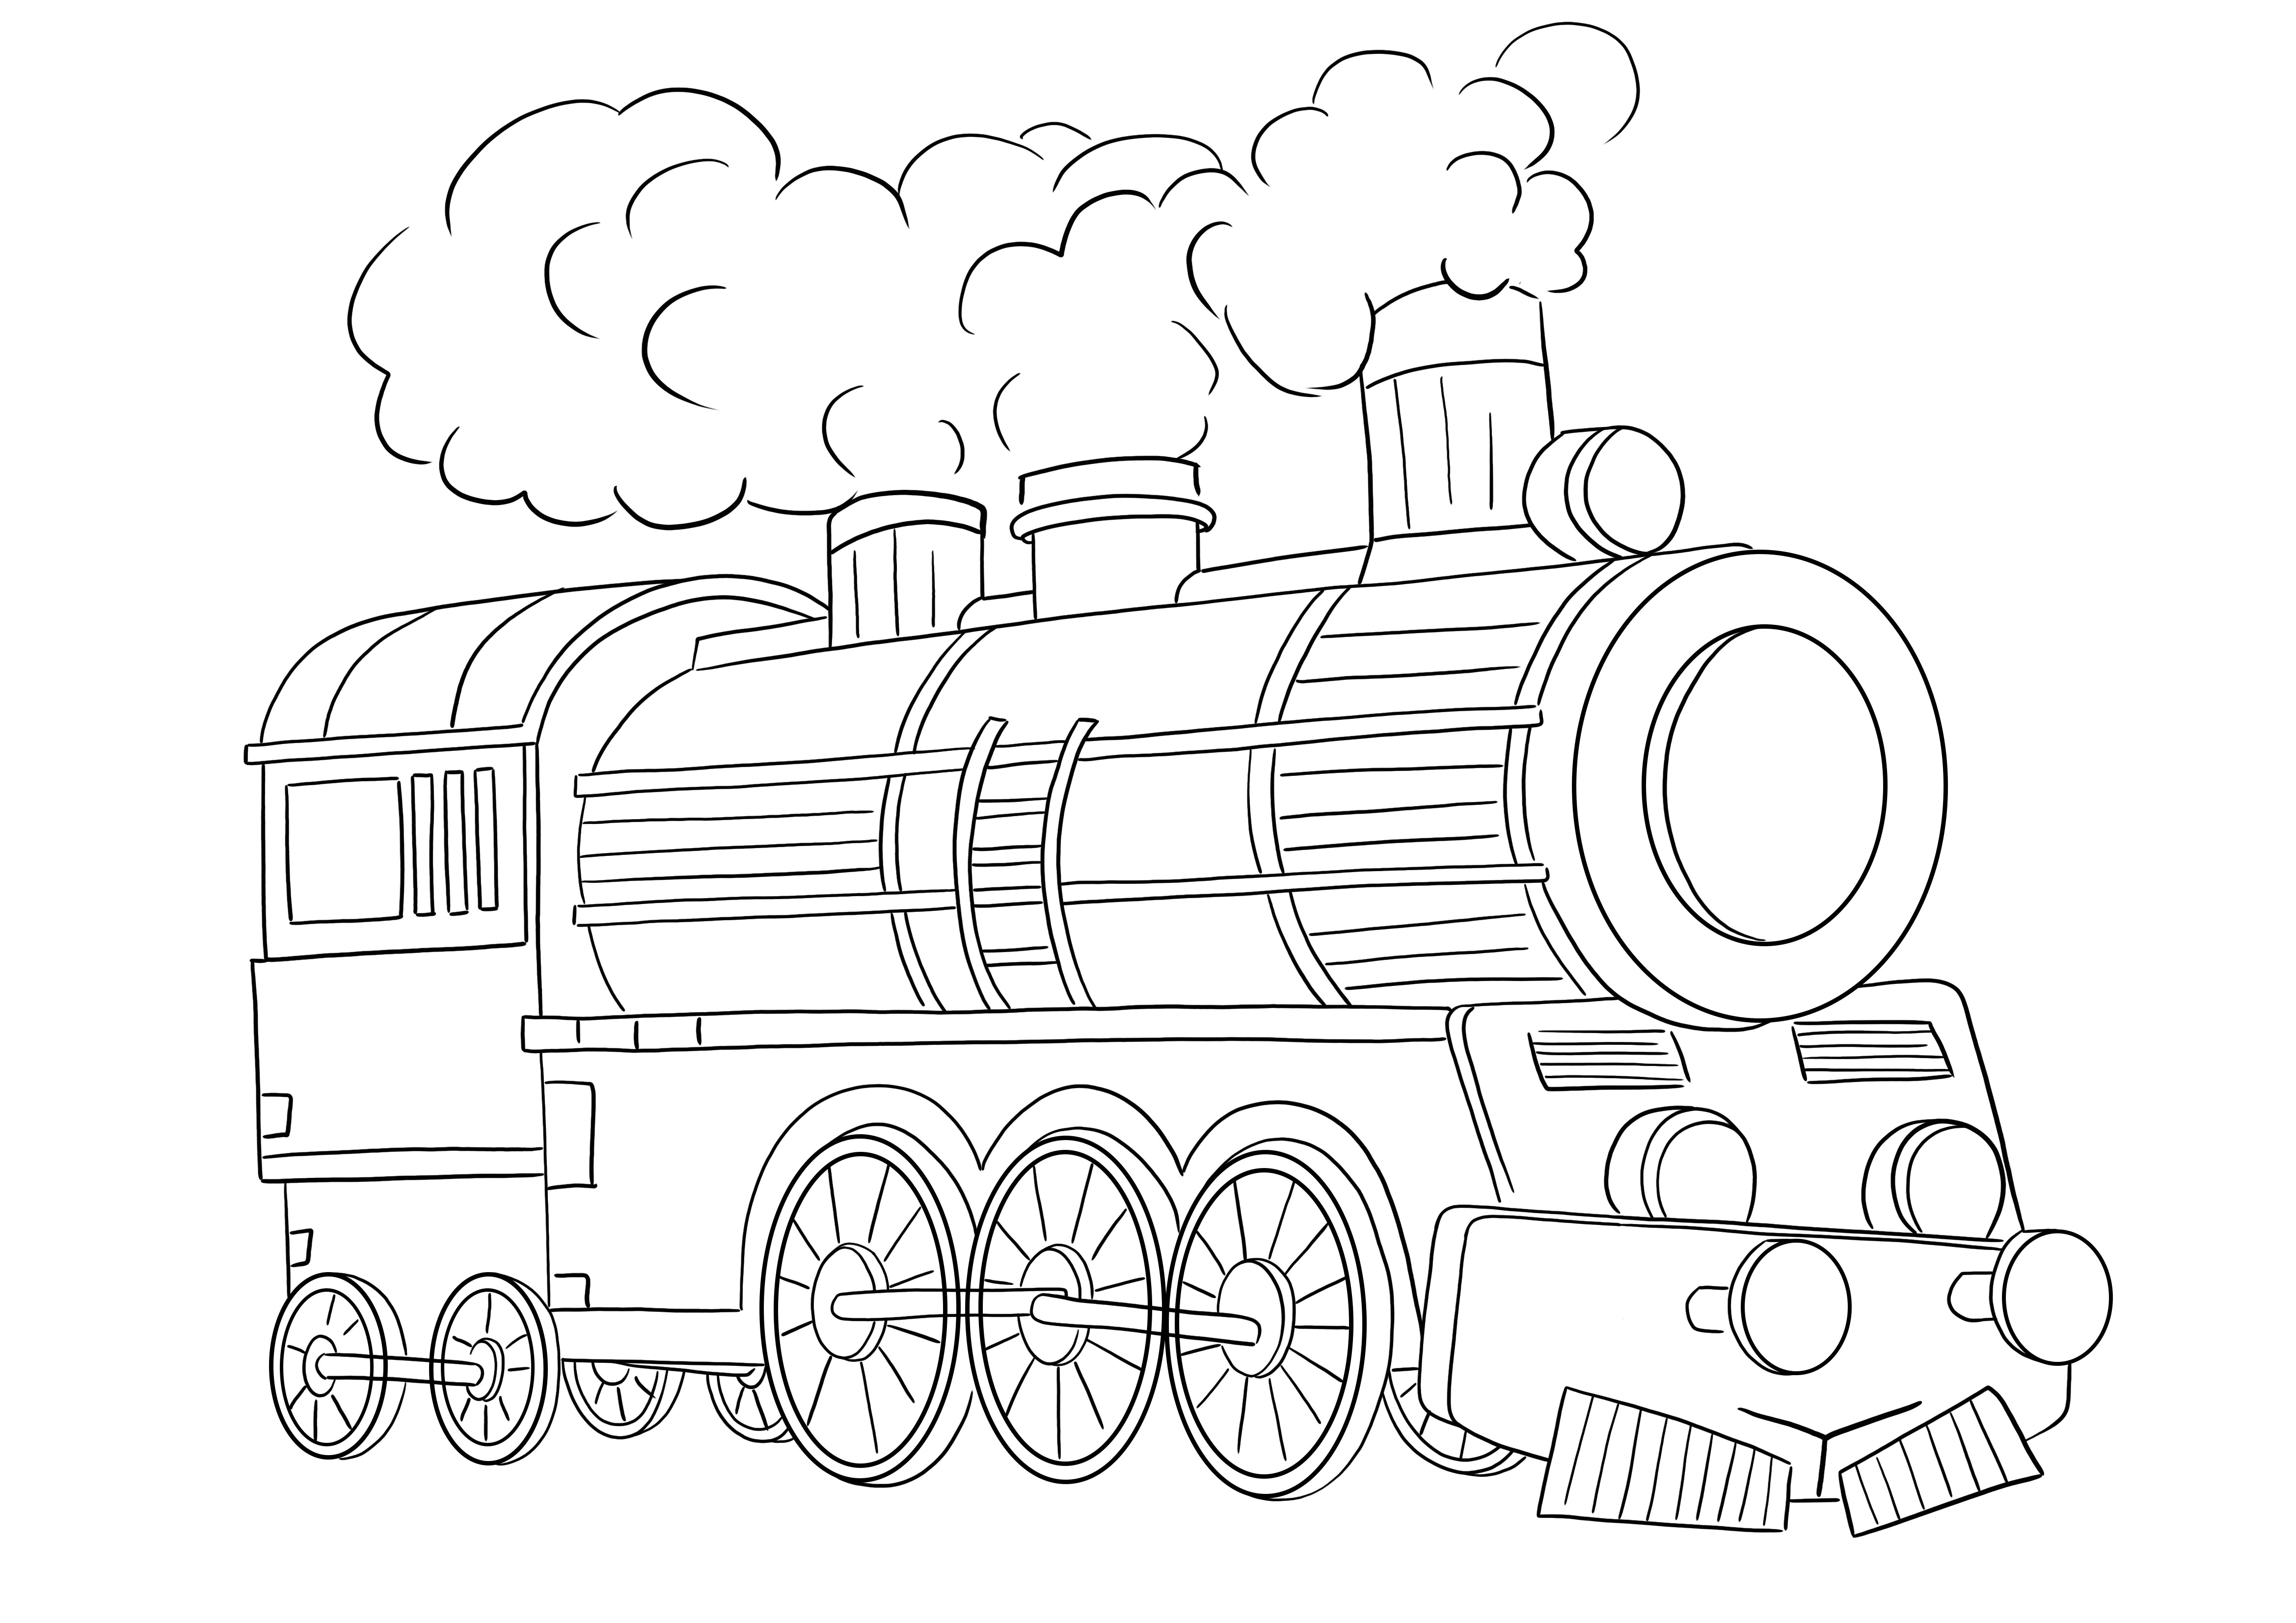 着色のための蒸気機関車と簡単に着色できる無料の印刷画像